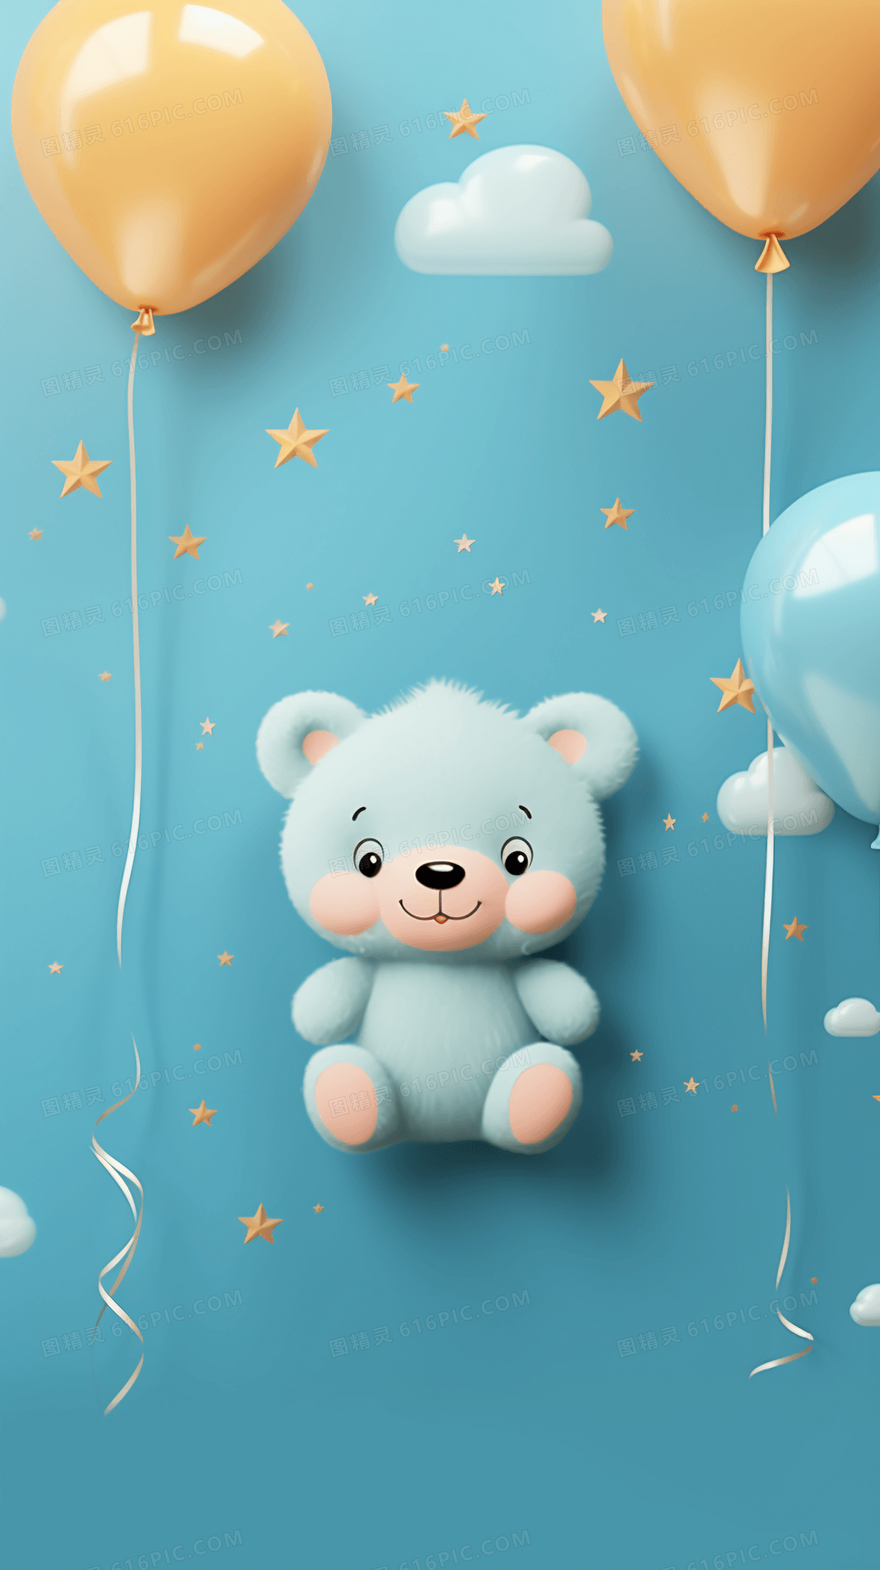 小清新卡通气球小熊背景